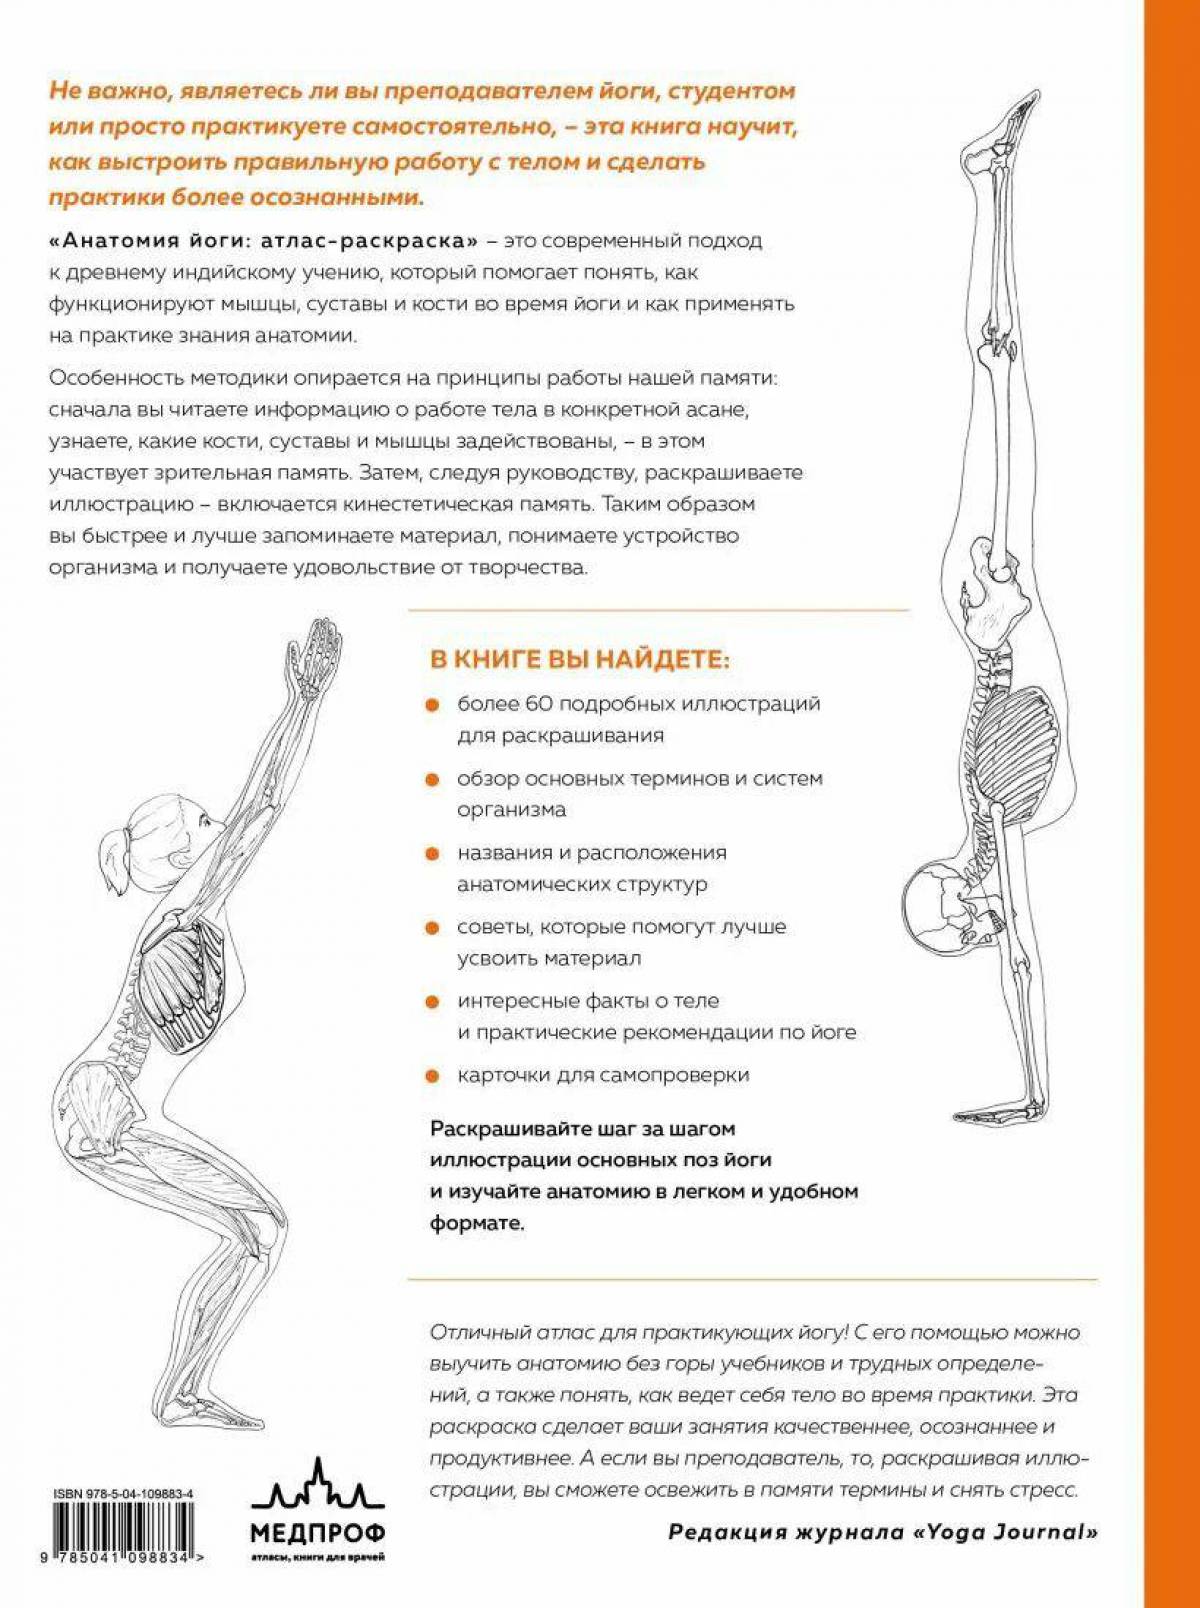 Анатомия йоги атлас #23